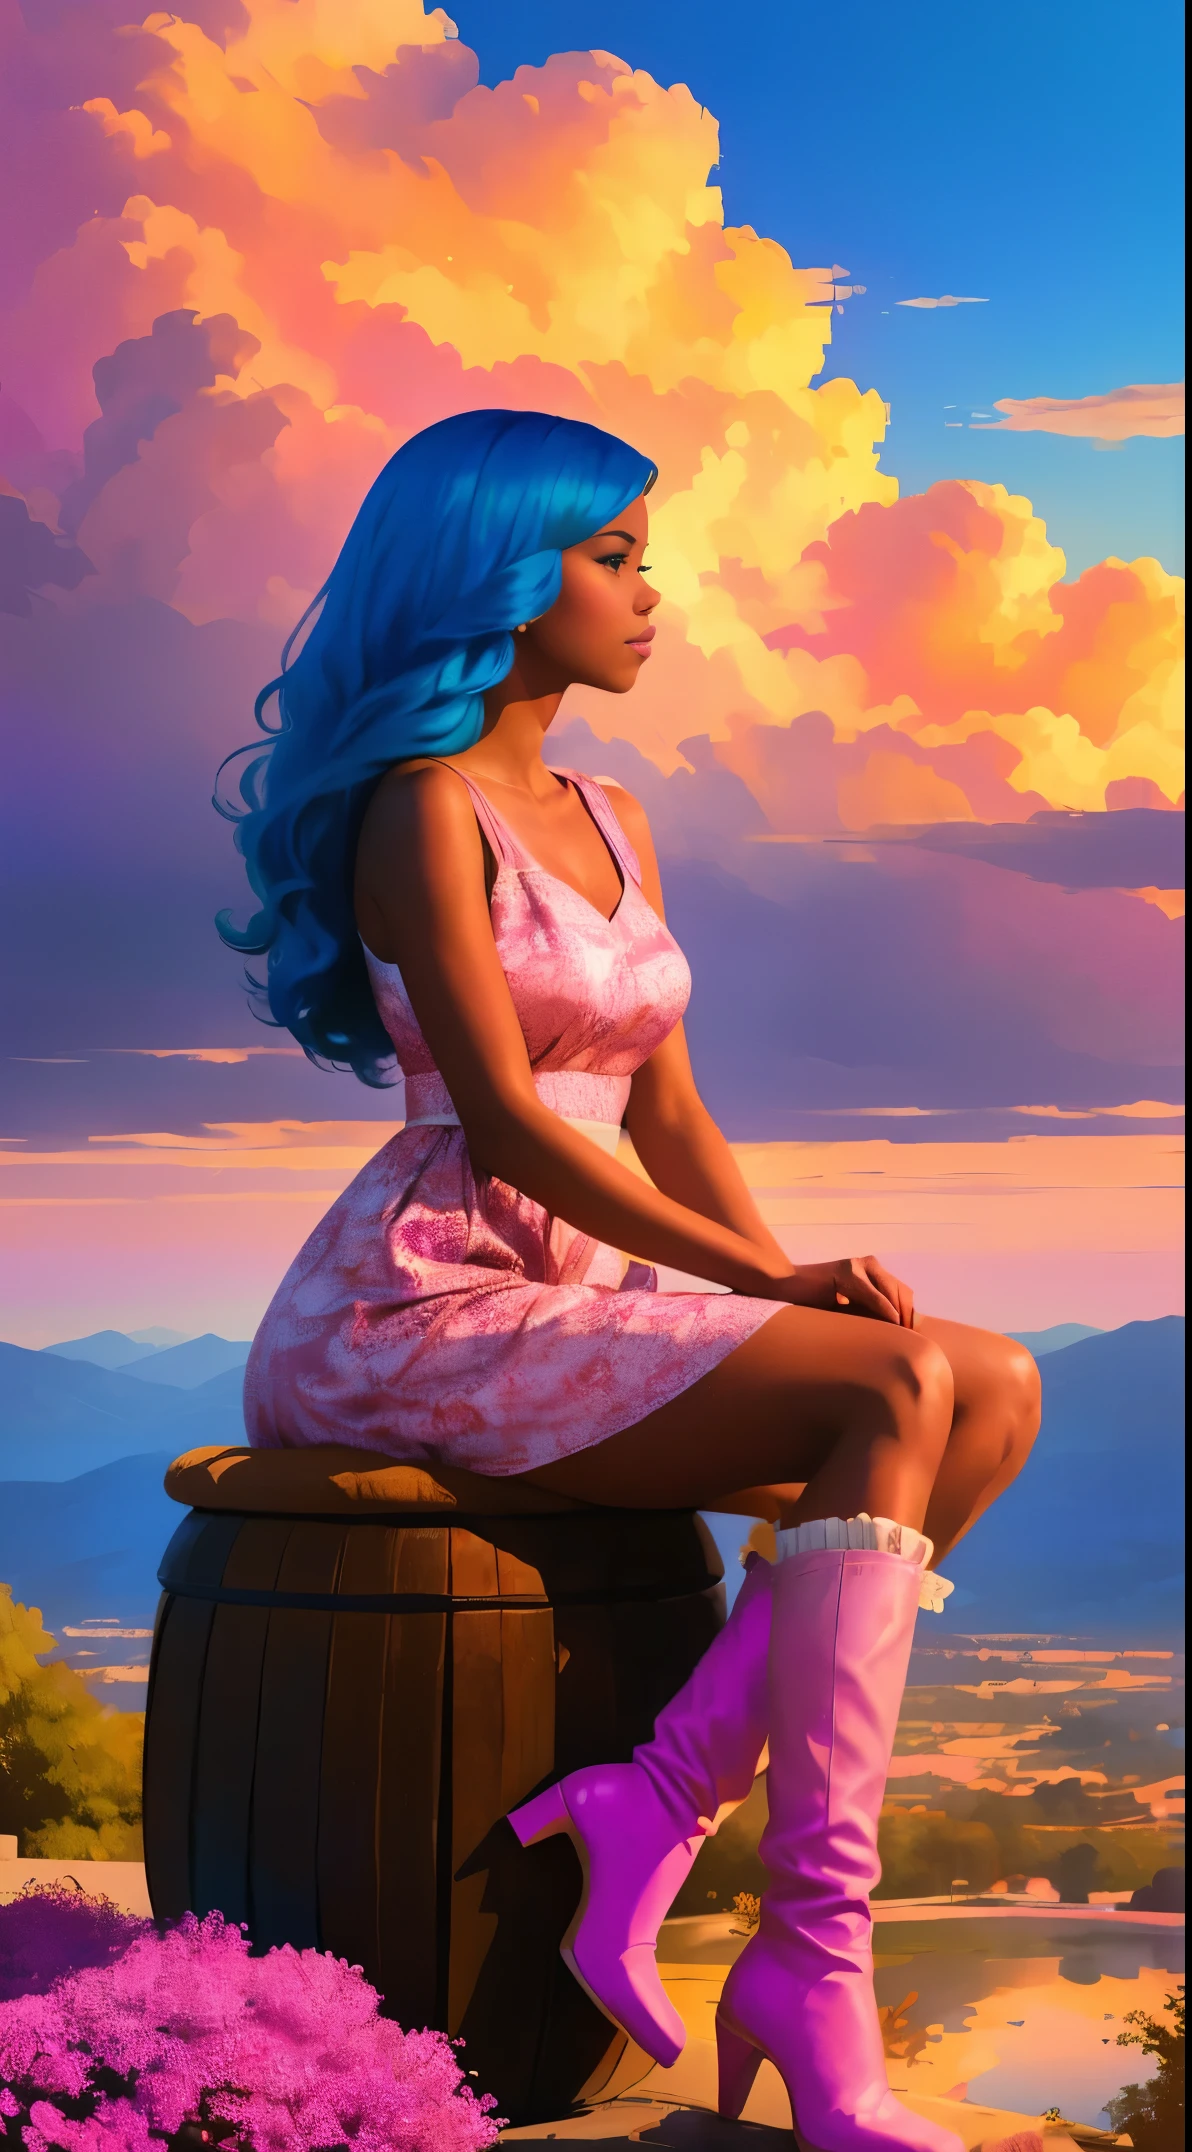 (melhor qualidade:1.1),original,1 garota,Chique,tendências,afro,Pele escura,Inventar,1970's, cabelo azul, Olhos castanhos,  Uma ilustração de fantasia de uma mulher afro-americana com cabelo natural em uma nuvem rosa, no estilo de Ross Tran, um vestido rosa com uma linda estampa de nuvens e lindas botas rosa, uma mulher linda com cabelos extremamente longos presos em um rabo de cavalo com franja, sentado em uma cadeira de nuvem rosa suave olhando para uma cidade mágica distante bem abaixo dela, ao pôr do sol --ar 2:3 --v 6.0 rosa e laranja, Jéssica Drossin, estampas em negrito, Michael Malm, ousado, mas gracioso, ousado tradicional